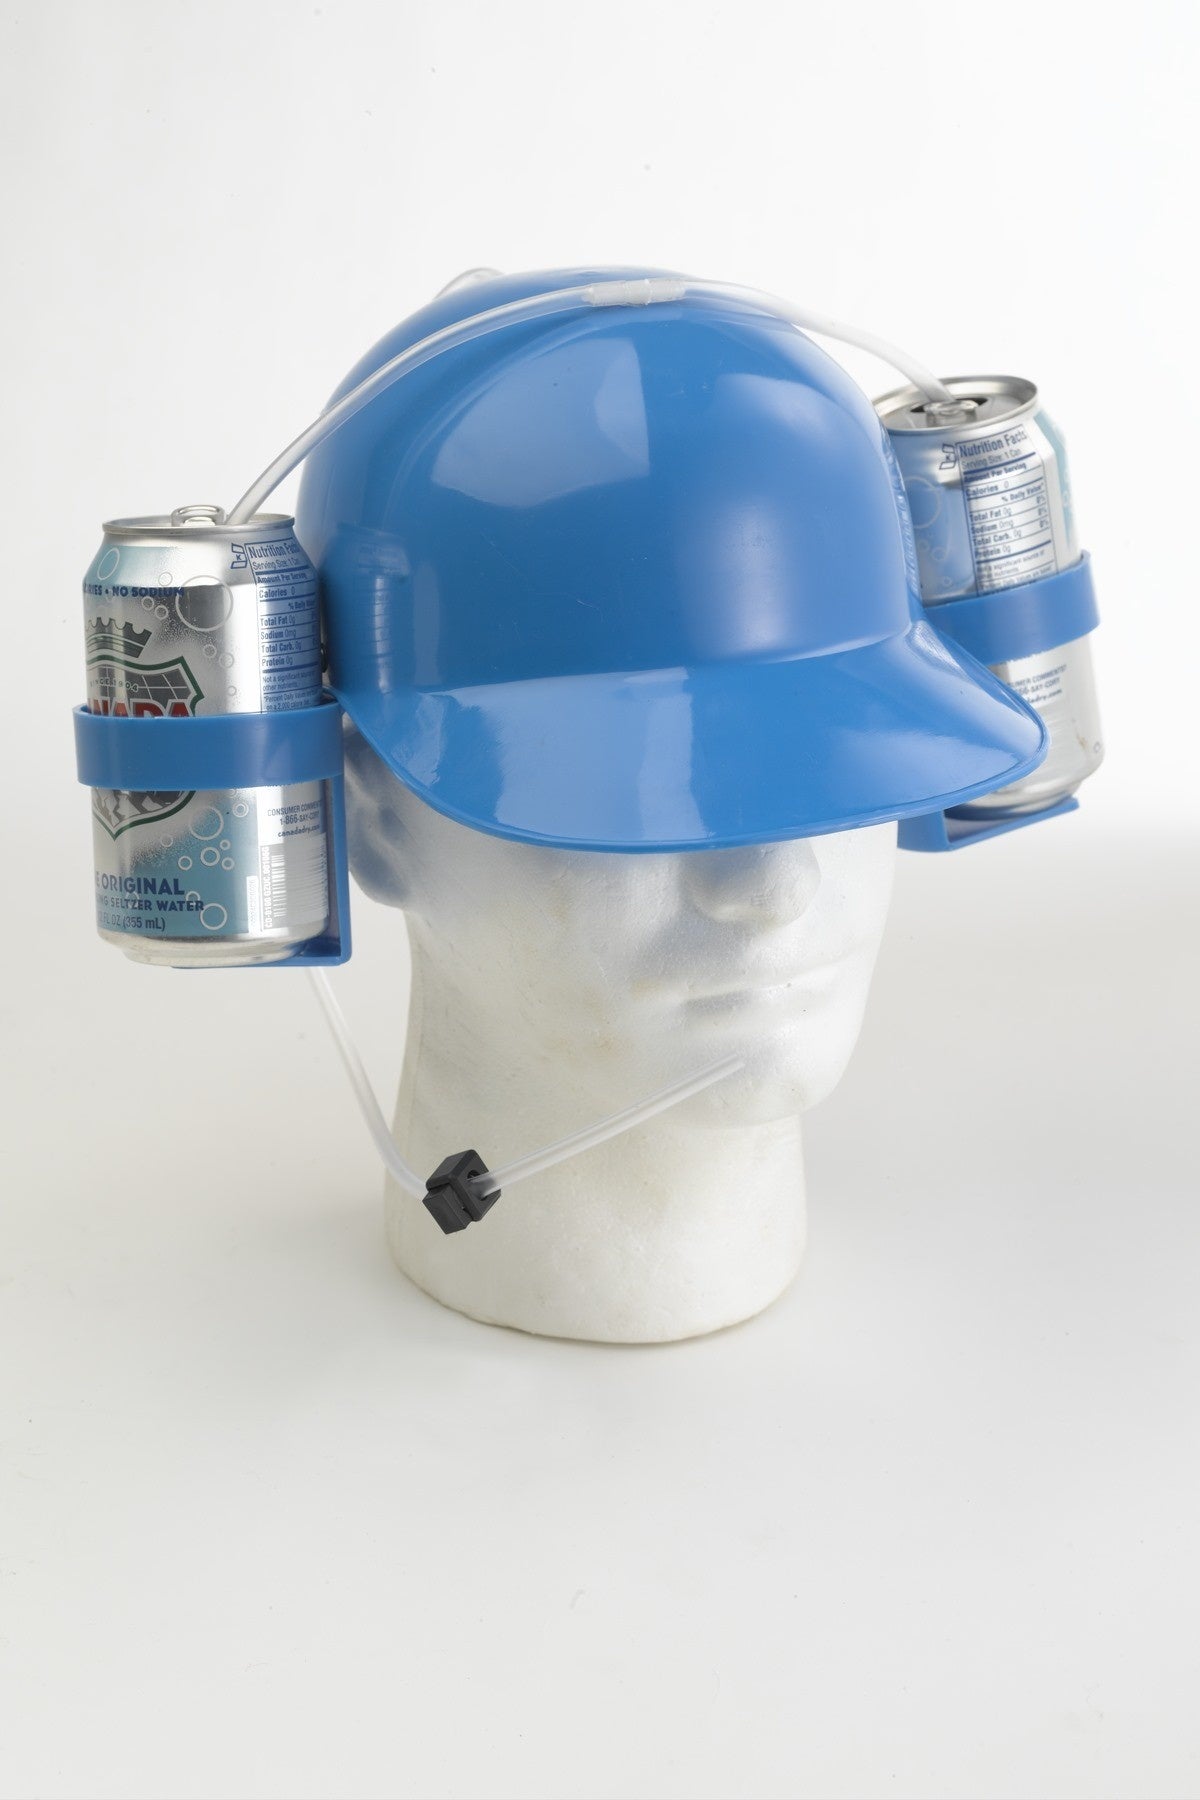 Beer Drinking Helmet, Helmet Beer Holder